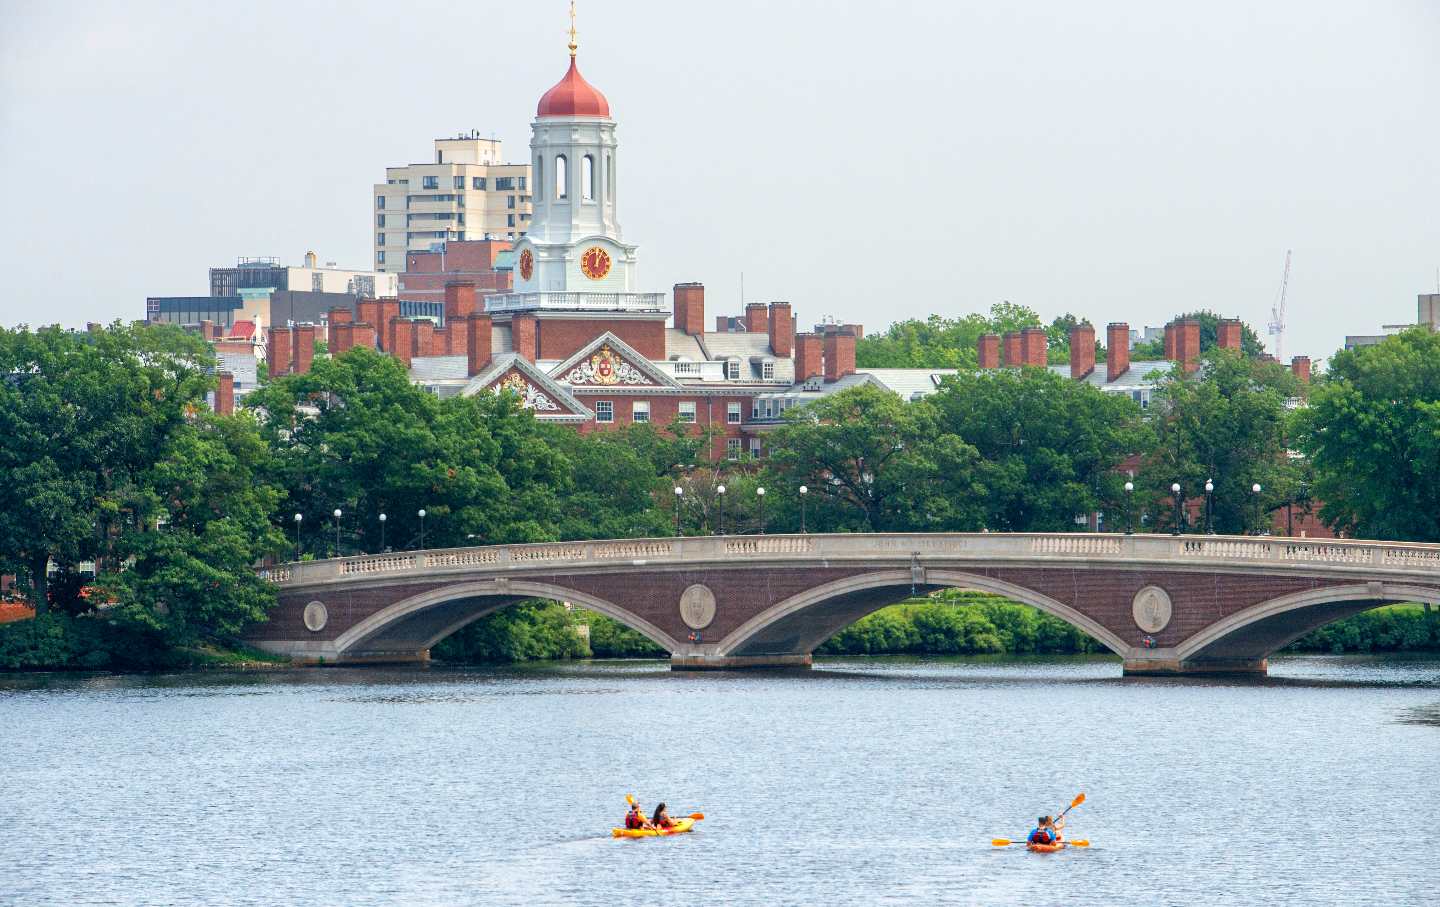 The Harvard University campus in Cambridge, Boston, Massachusetts.